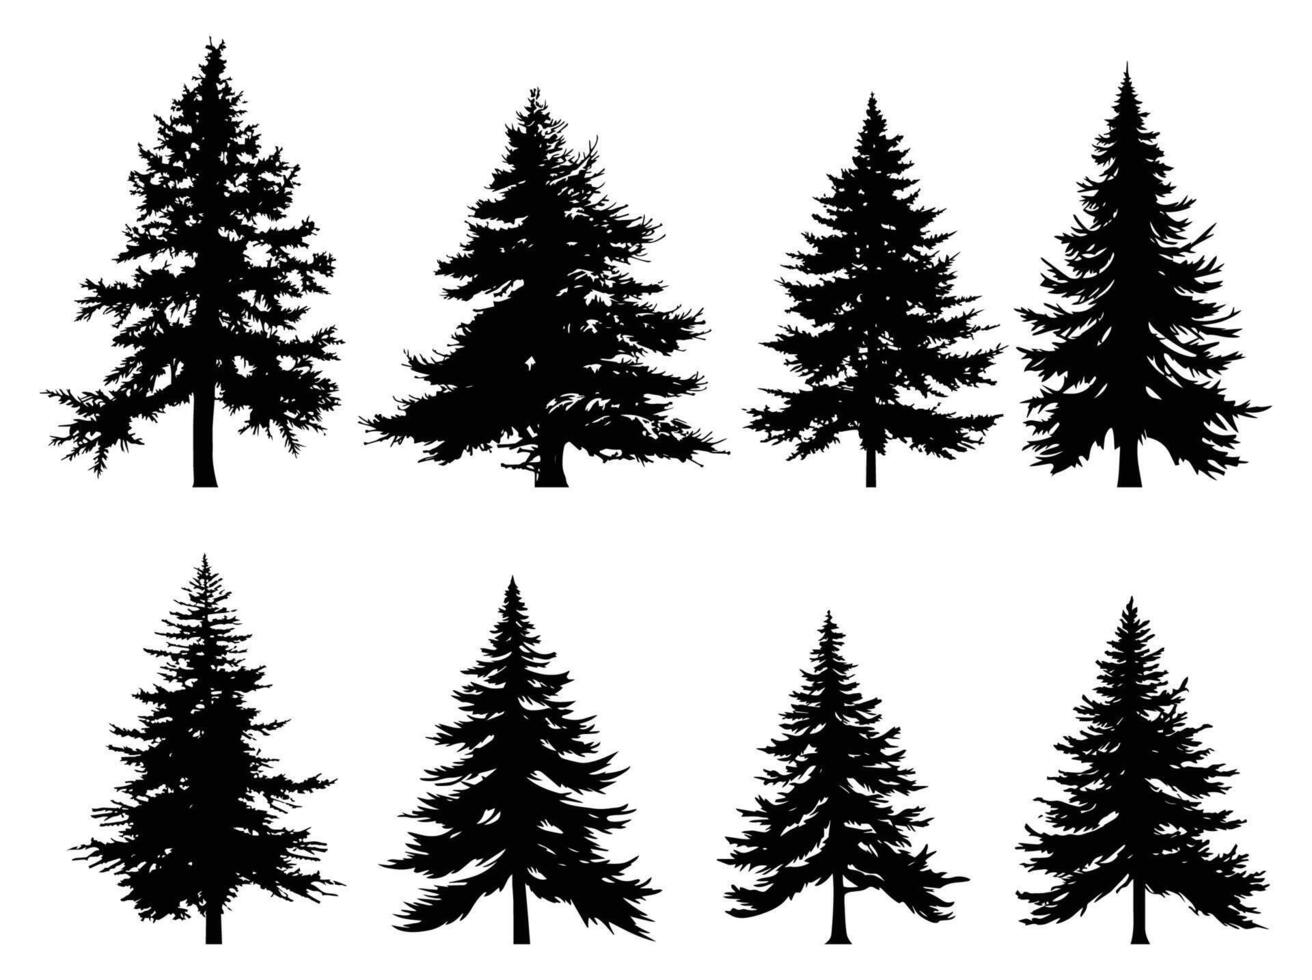 abeto árvores silhueta definir. Preto silhuetas do seno árvores em branco fundo. vetor ilustração